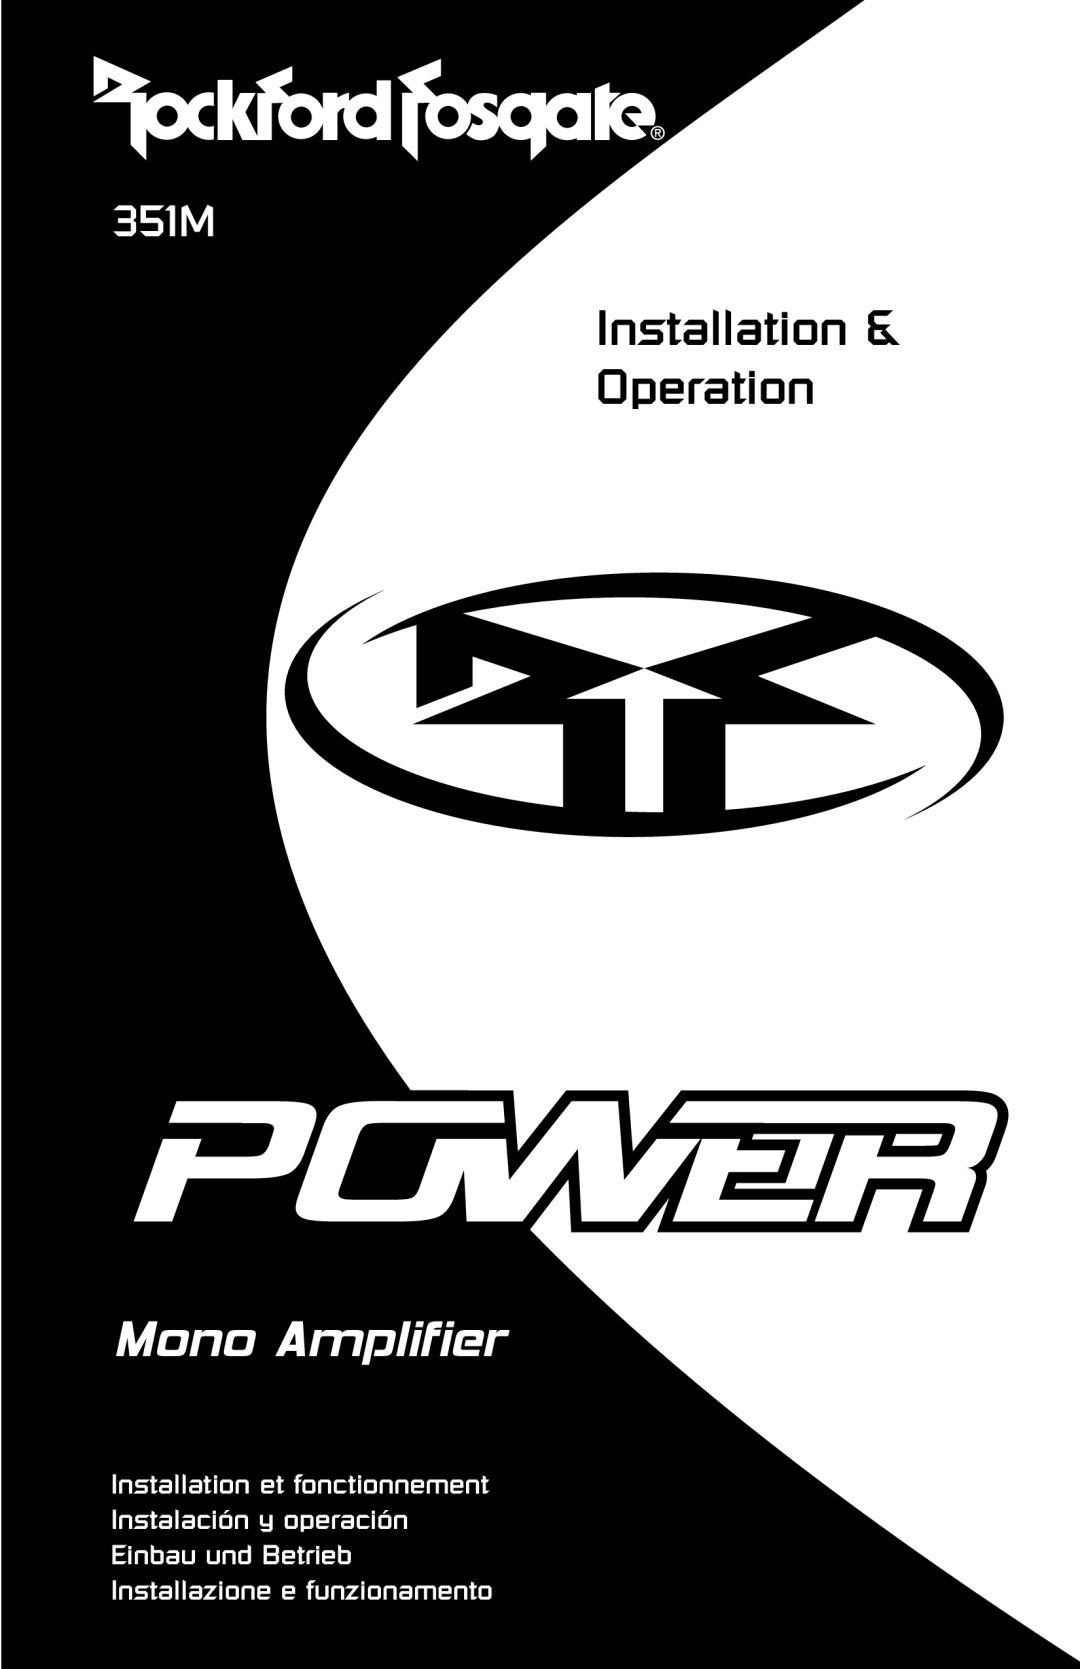 Rockford Fosgate 351M manual Installation et fonctionnement, Instalación y operación Einbau und Betrieb, Mono Amplifier 